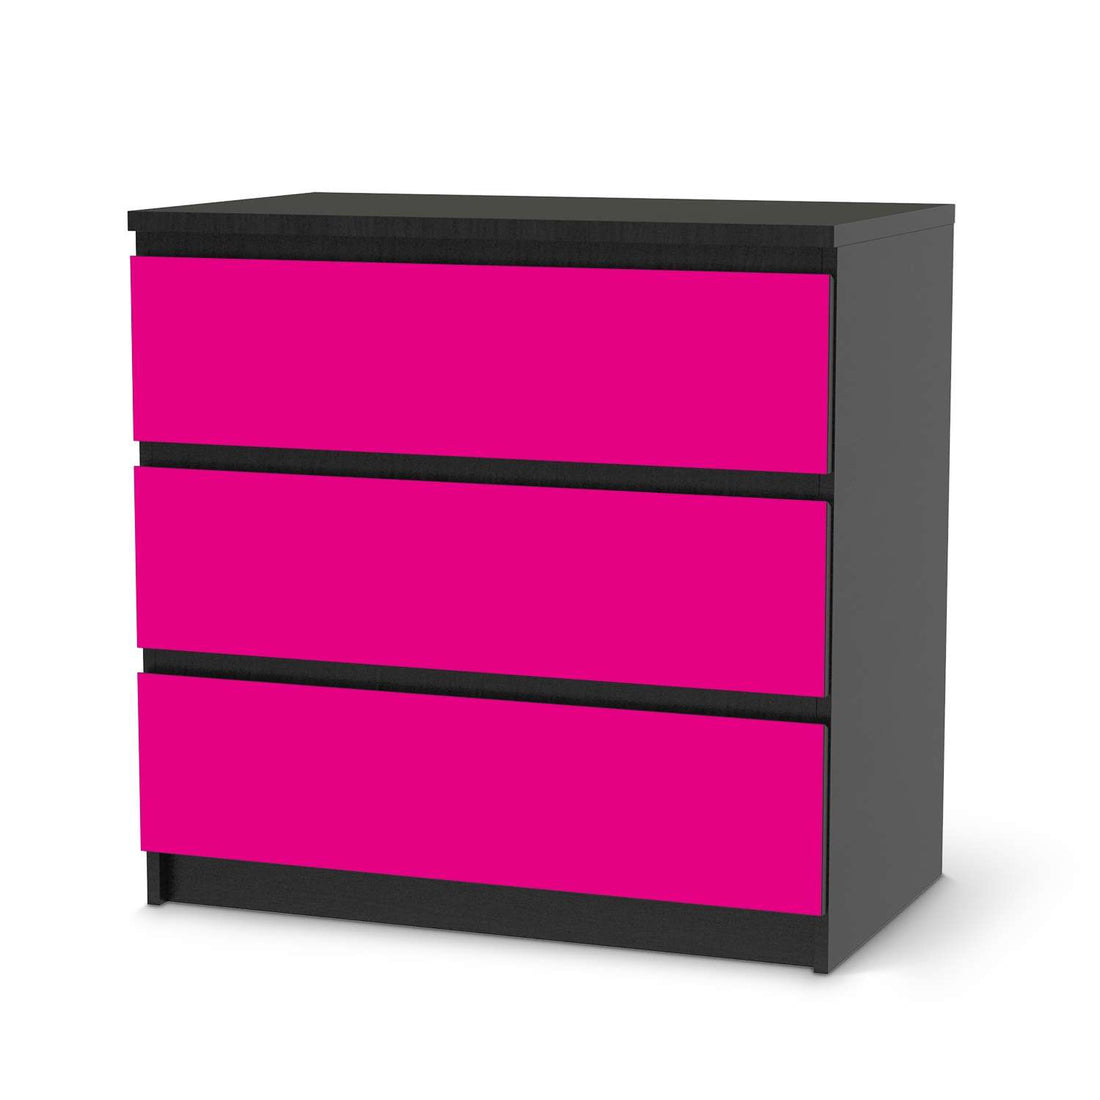 Klebefolie für Möbel Pink Dark - IKEA Malm Kommode 3 Schubladen - schwarz